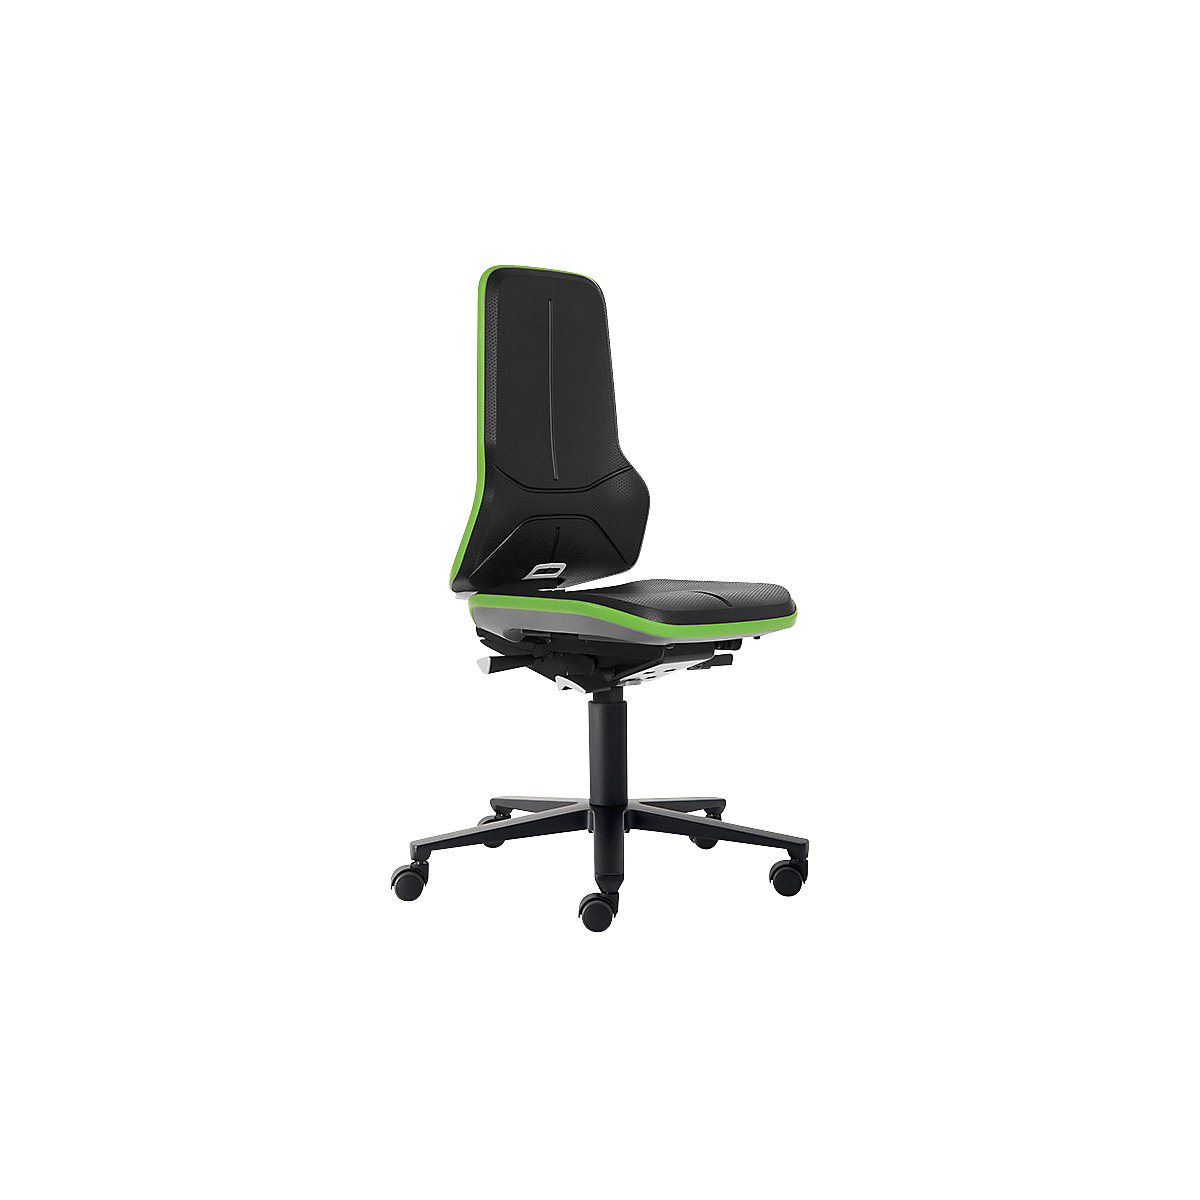 Pracovní otočná židle NEON, kolečka – bimos, synchronní mechanika, PU pěna, zelený flexibilní pás-5